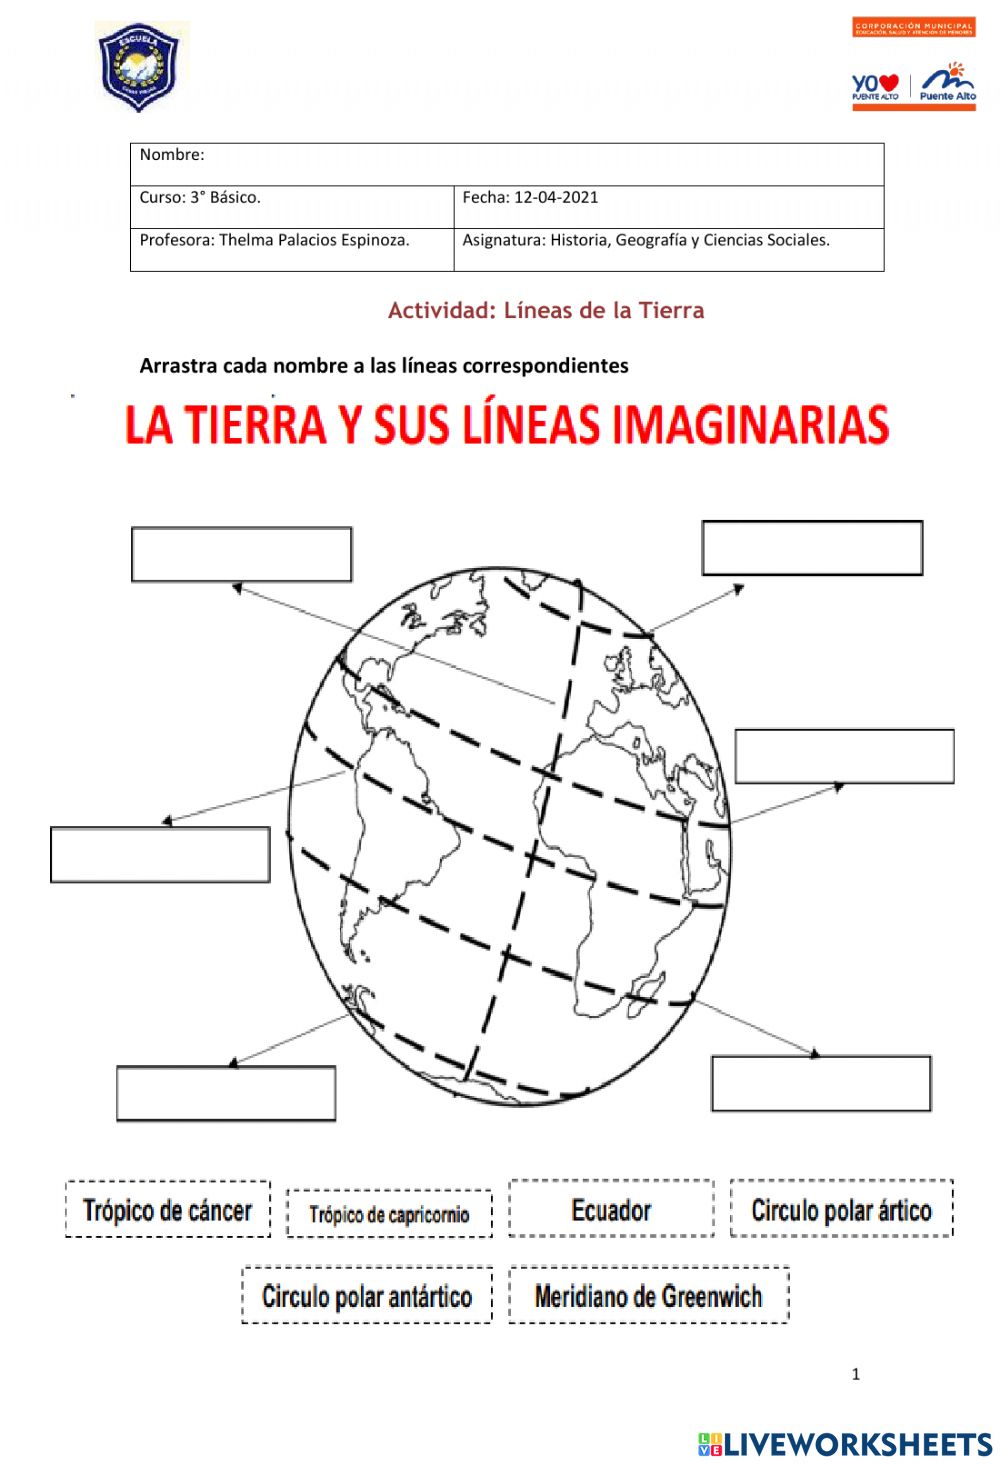 Las líneas imaginarias de la Tierra: una guía para niños